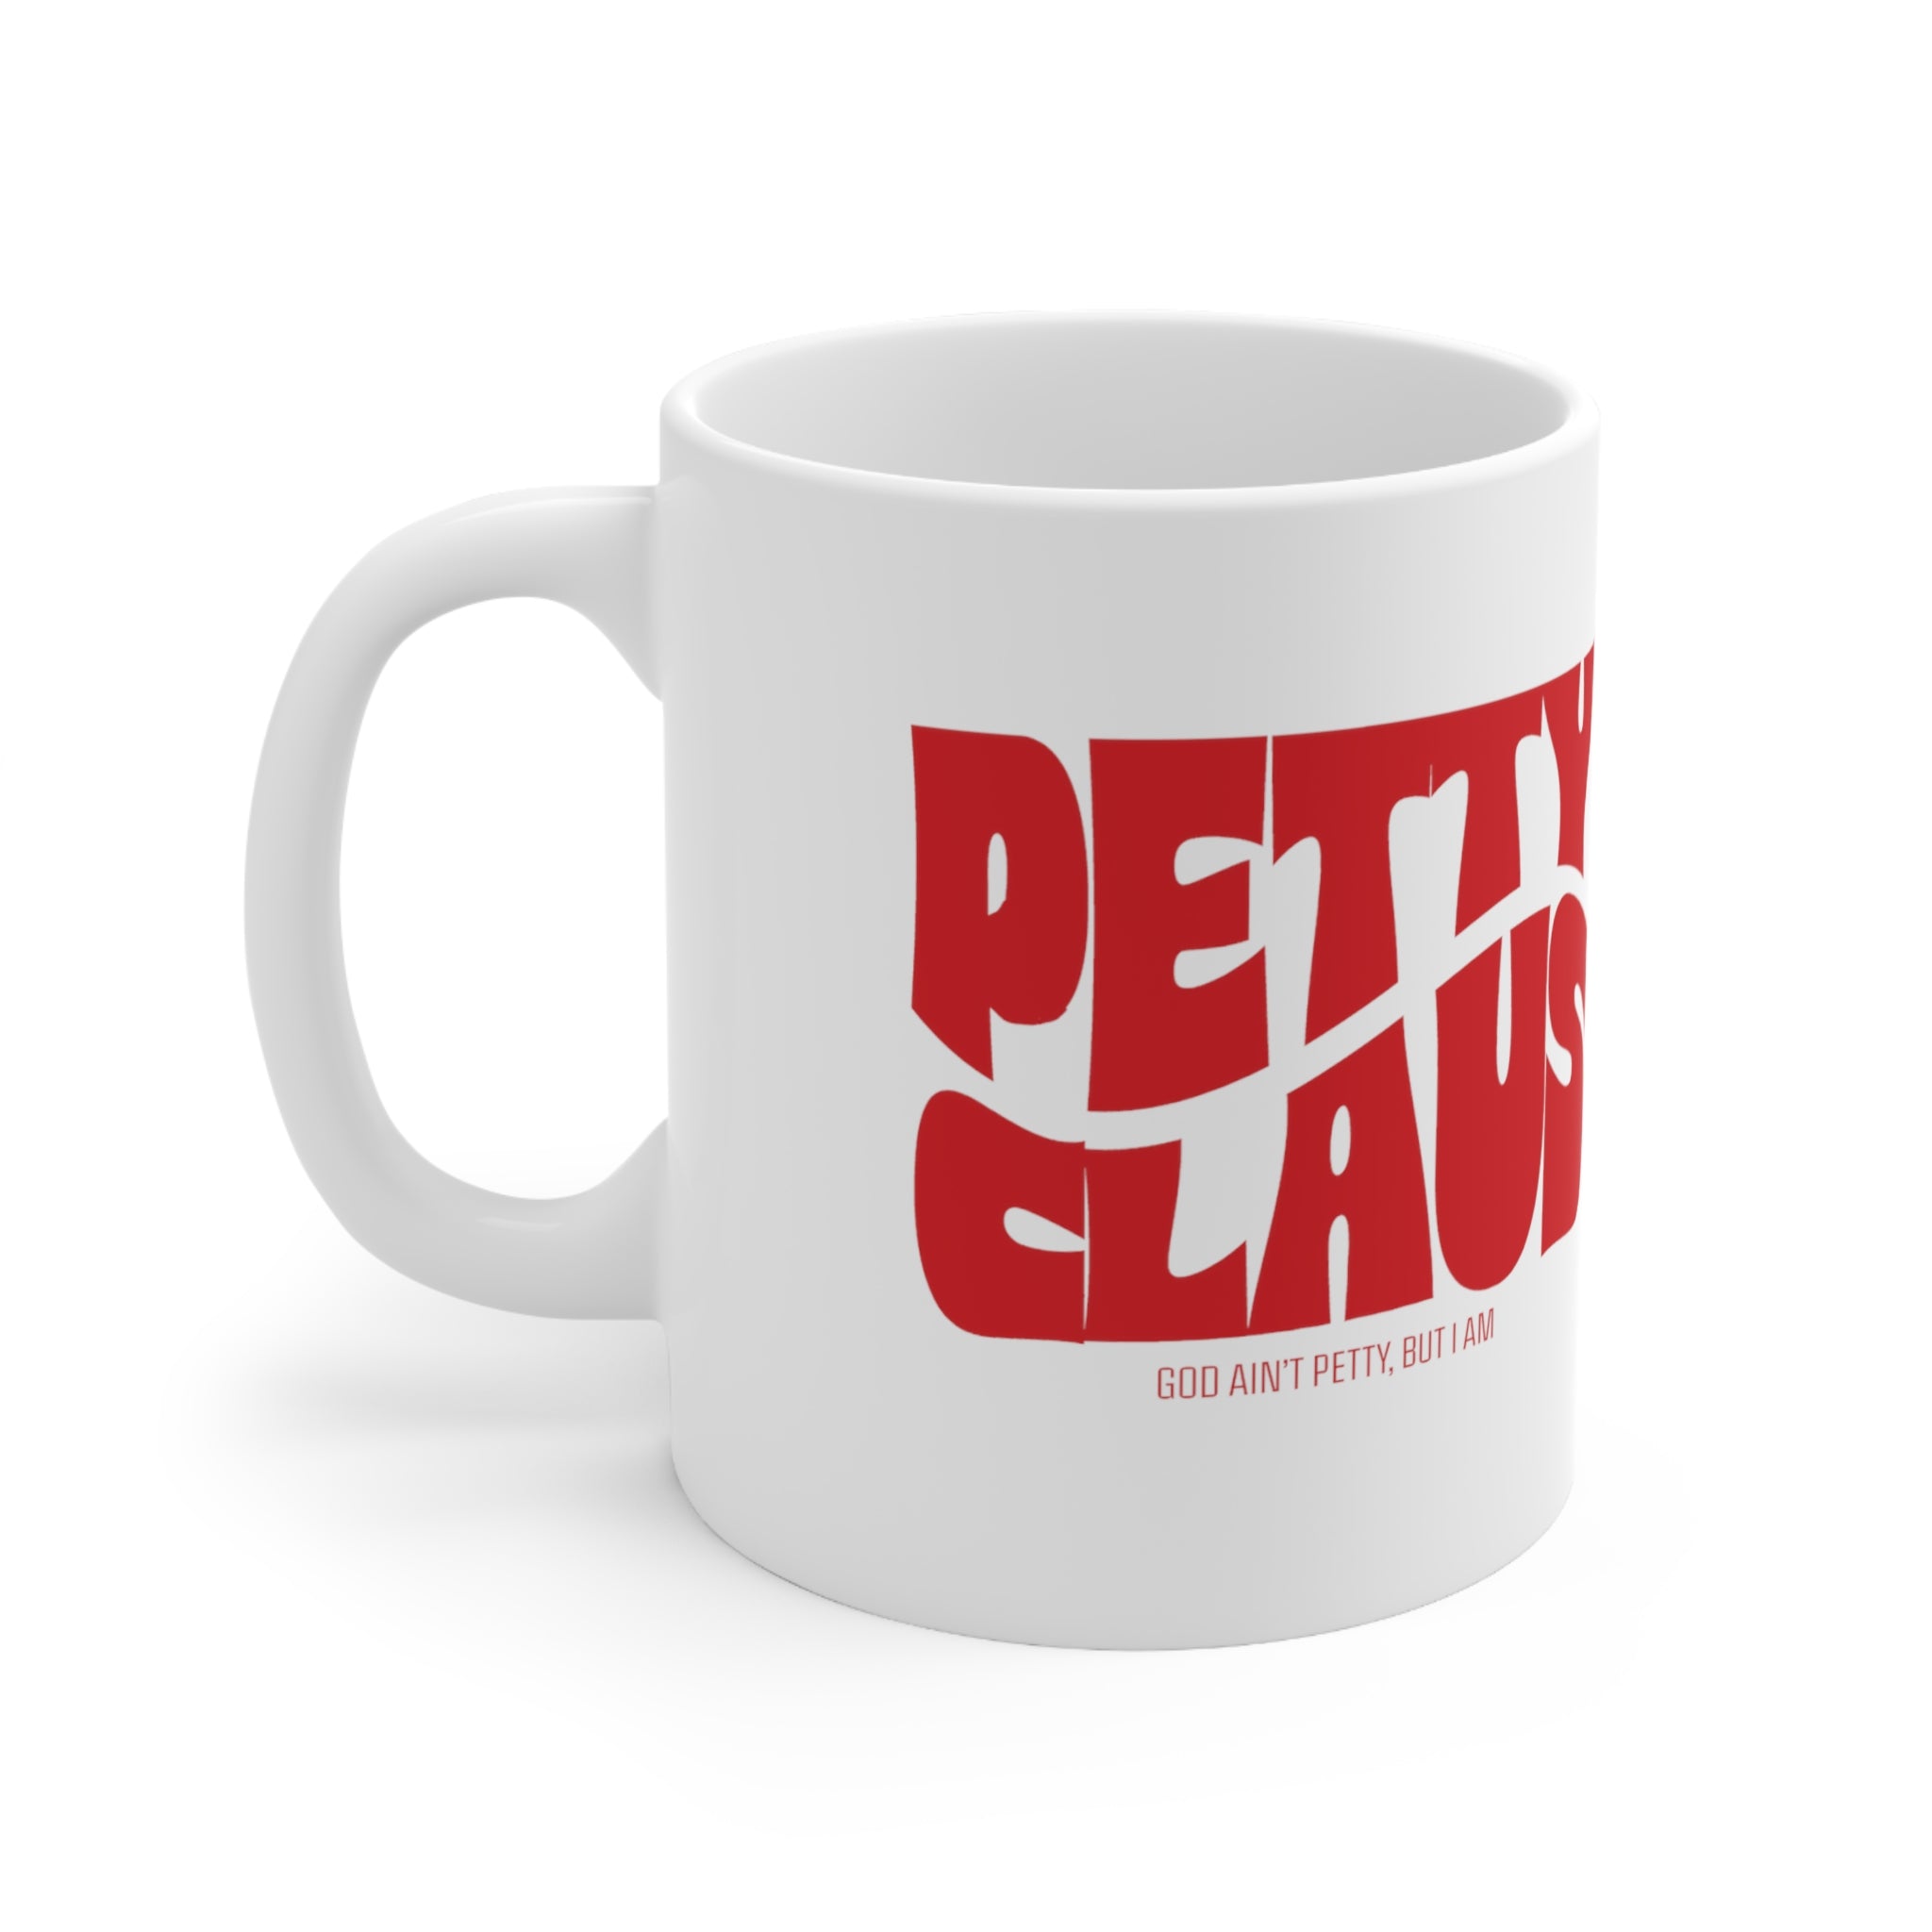 Petty Claus Retro Mug 11oz (White & Red )-Mug-The Original God Ain't Petty But I Am